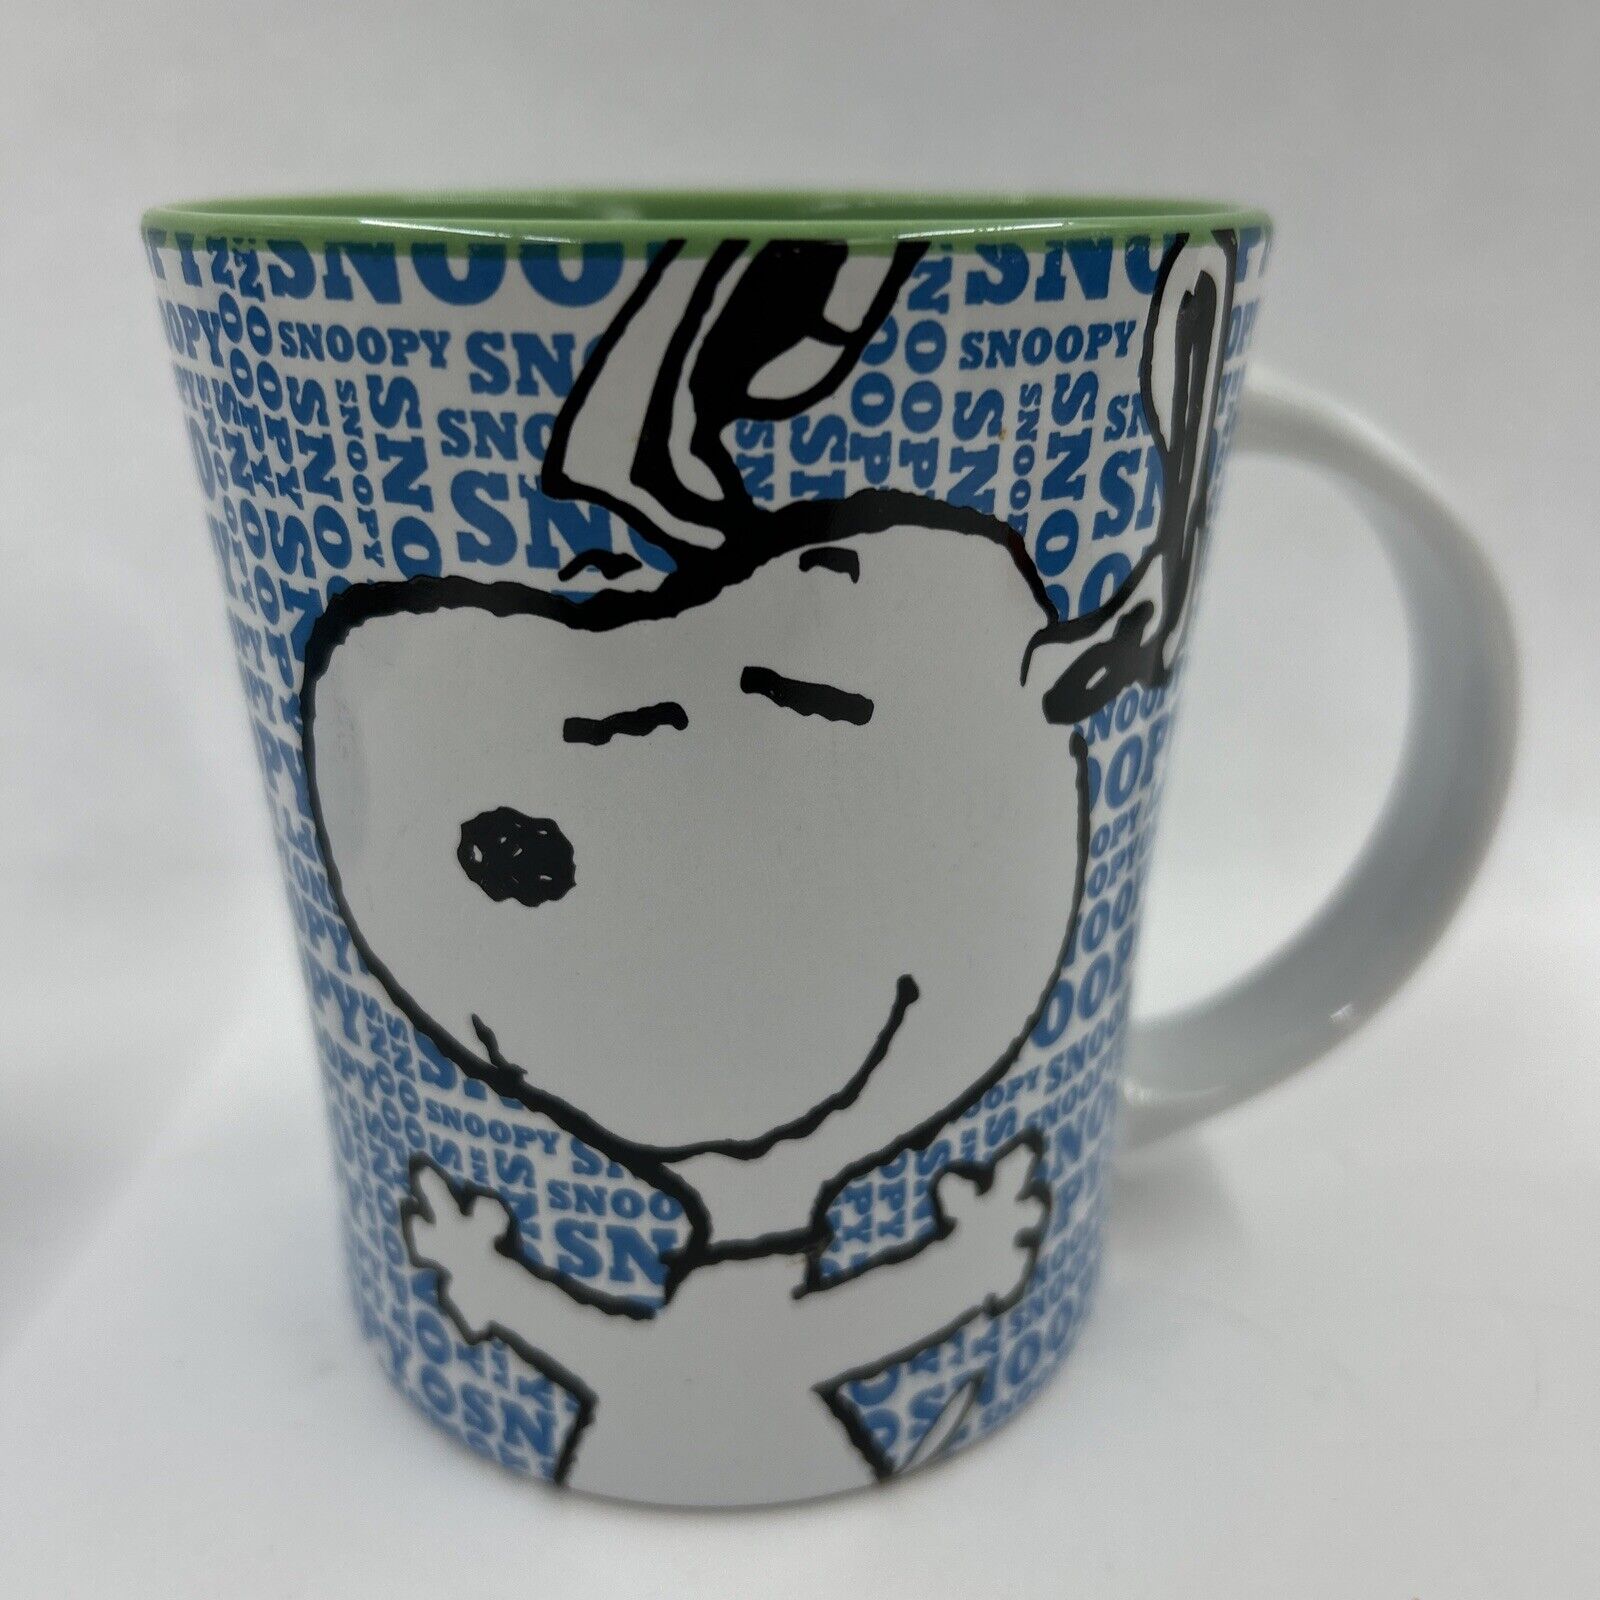 Peanuts Worldwide Snoopy Coffee Mug By Gibson Overseas